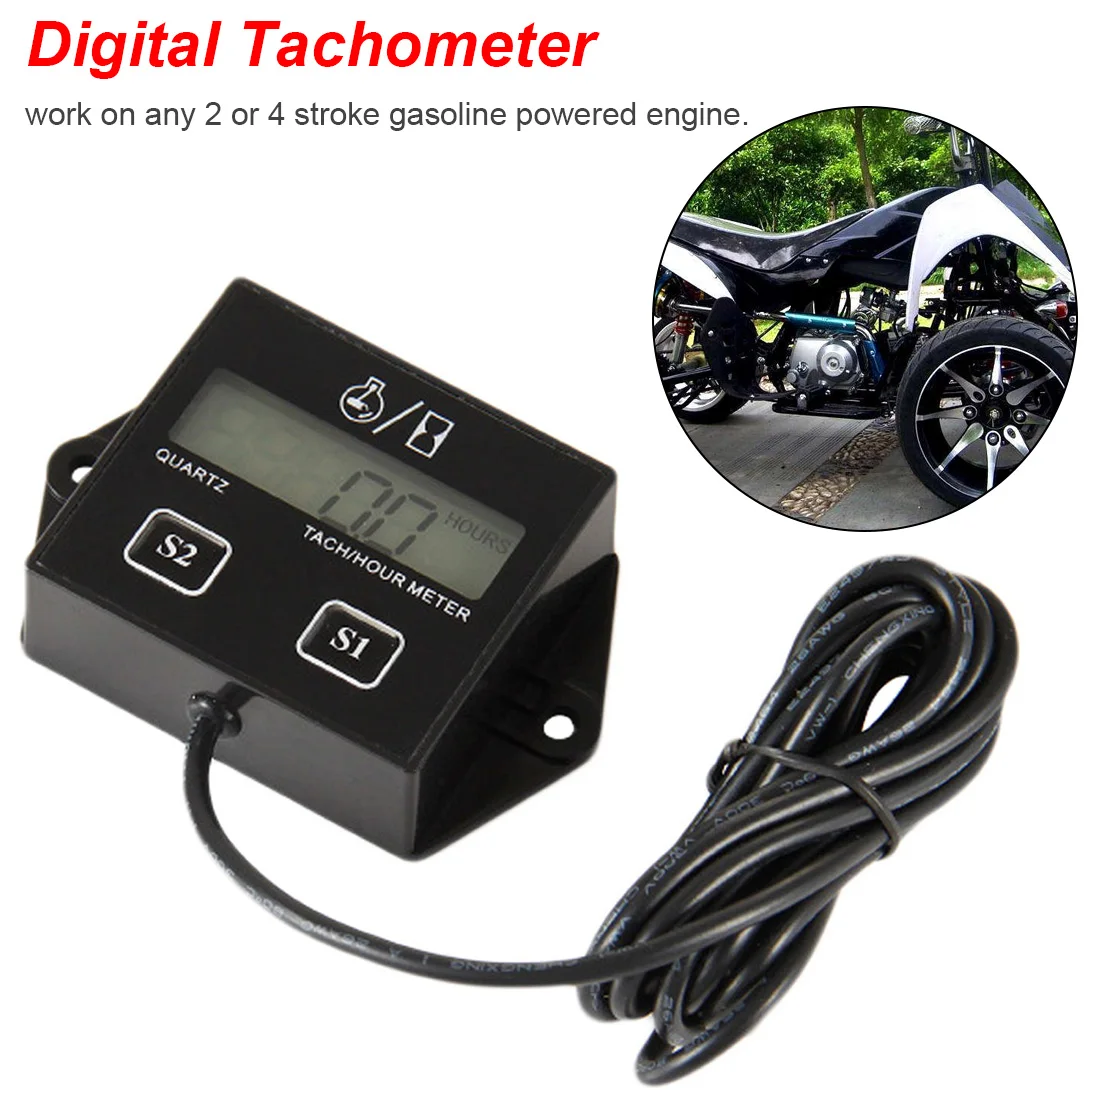 1Pc Digital Engine Tach Hour Meter Tachometer Gauge Inductive Display For Motorcycle Motor Marine Boat Engine spark sensor